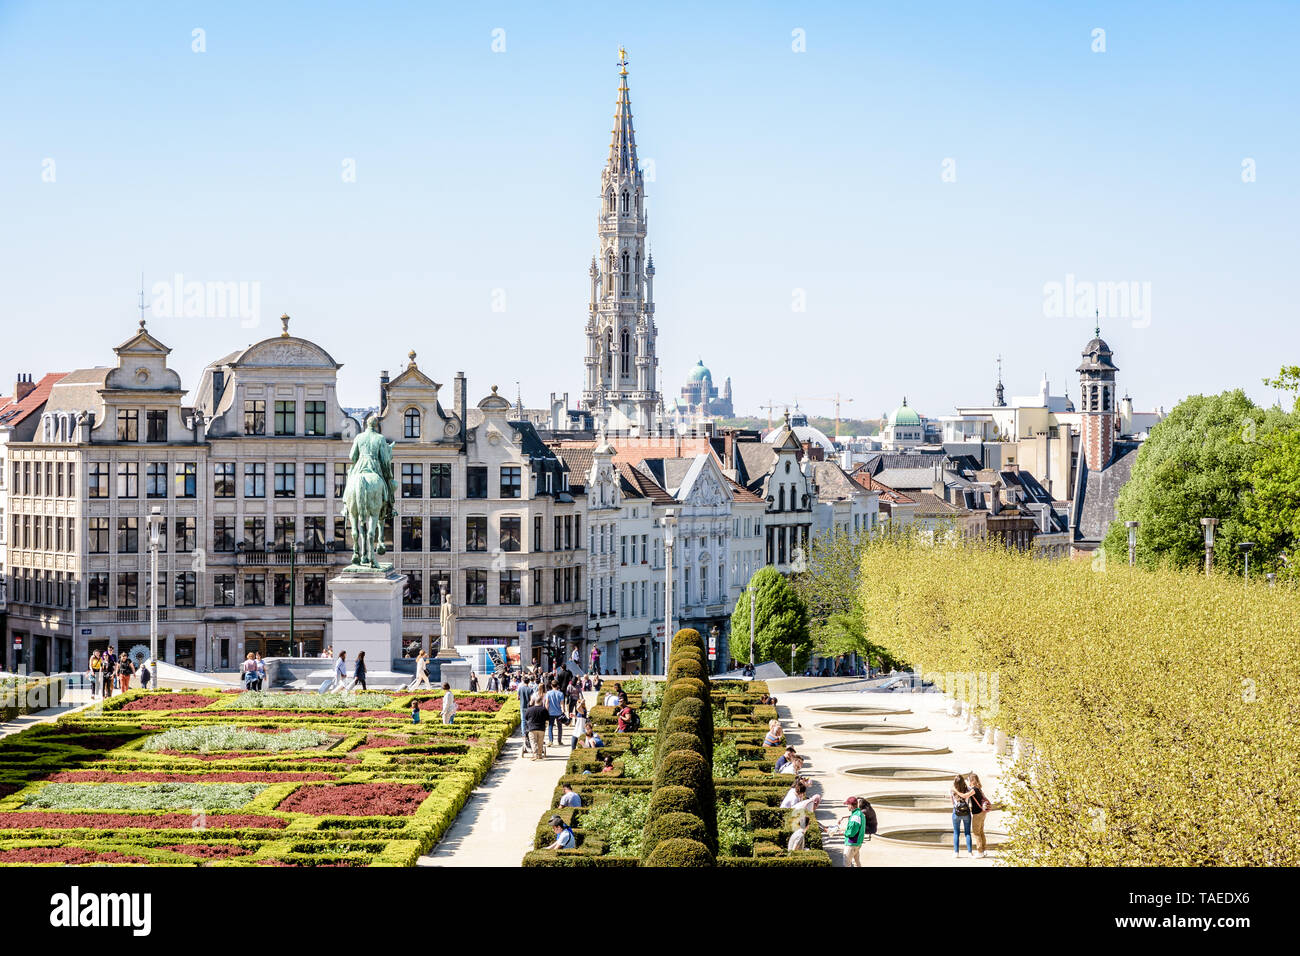 Vista desde el Mont des Arts en el jardín formal, la ciudad vieja y el campanario del ayuntamiento de Bruselas, Bélgica. Foto de stock